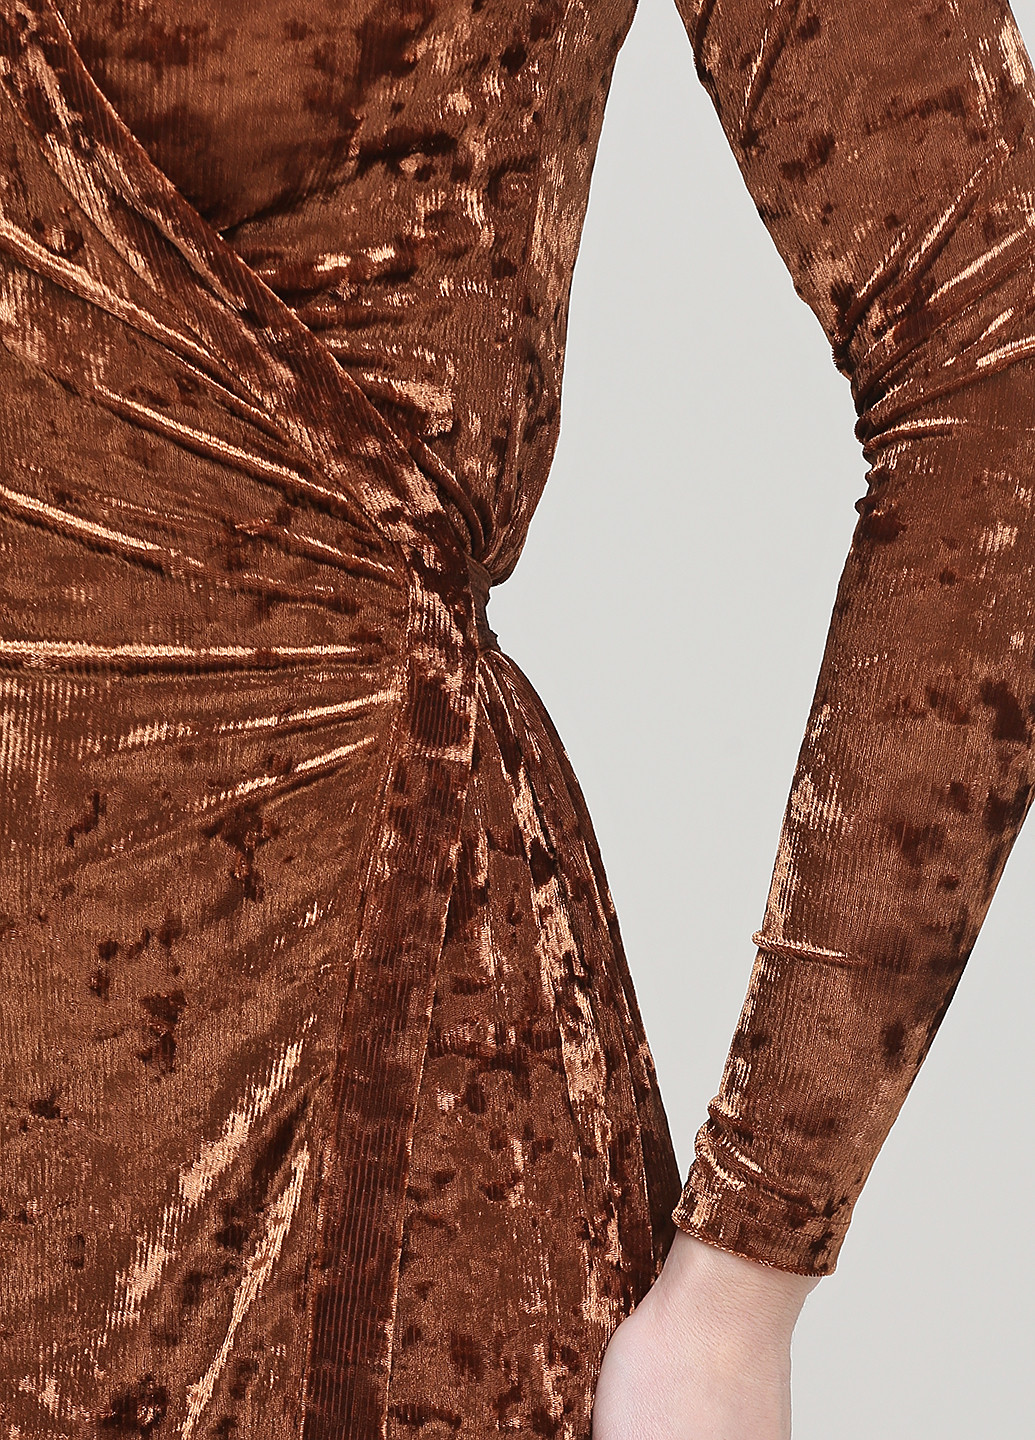 Светло-коричневое коктейльное платье на запах Care Label однотонное